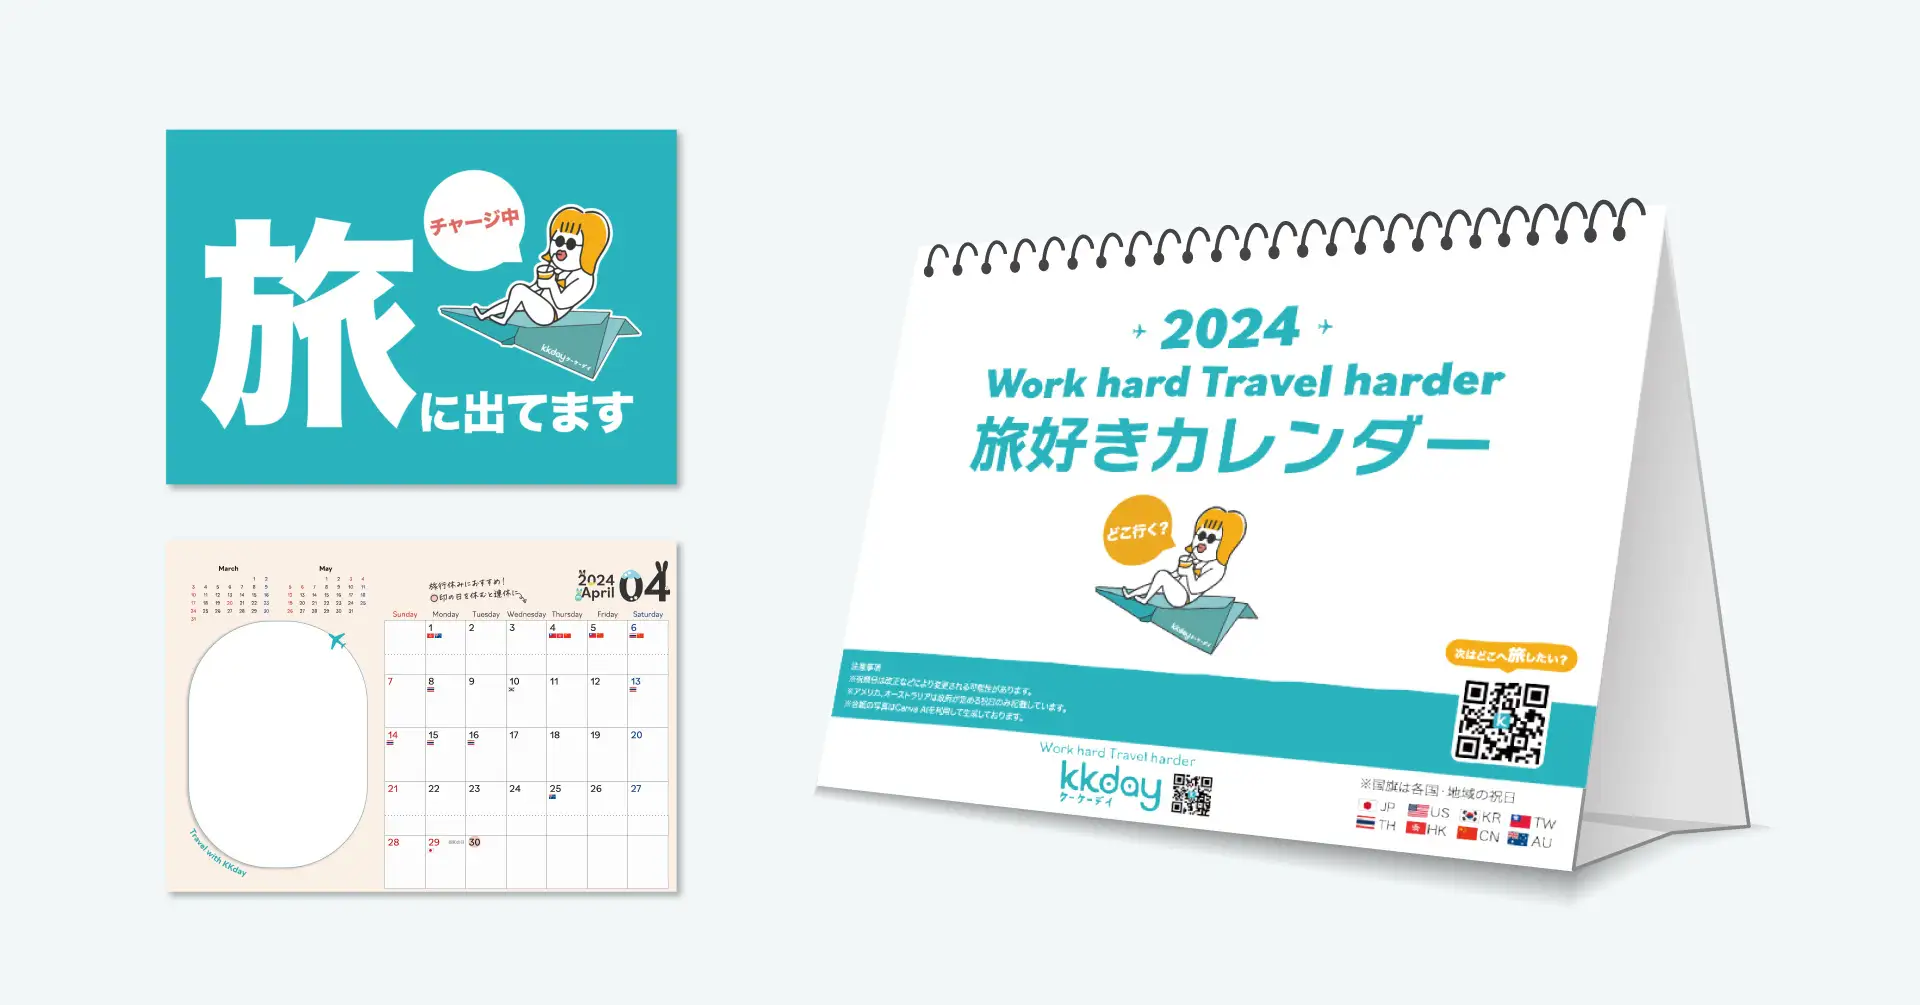 KKday、自分だけのカレンダーで自分だけの旅を計画できる「2024年KKday旅好きカレンダー」を製作